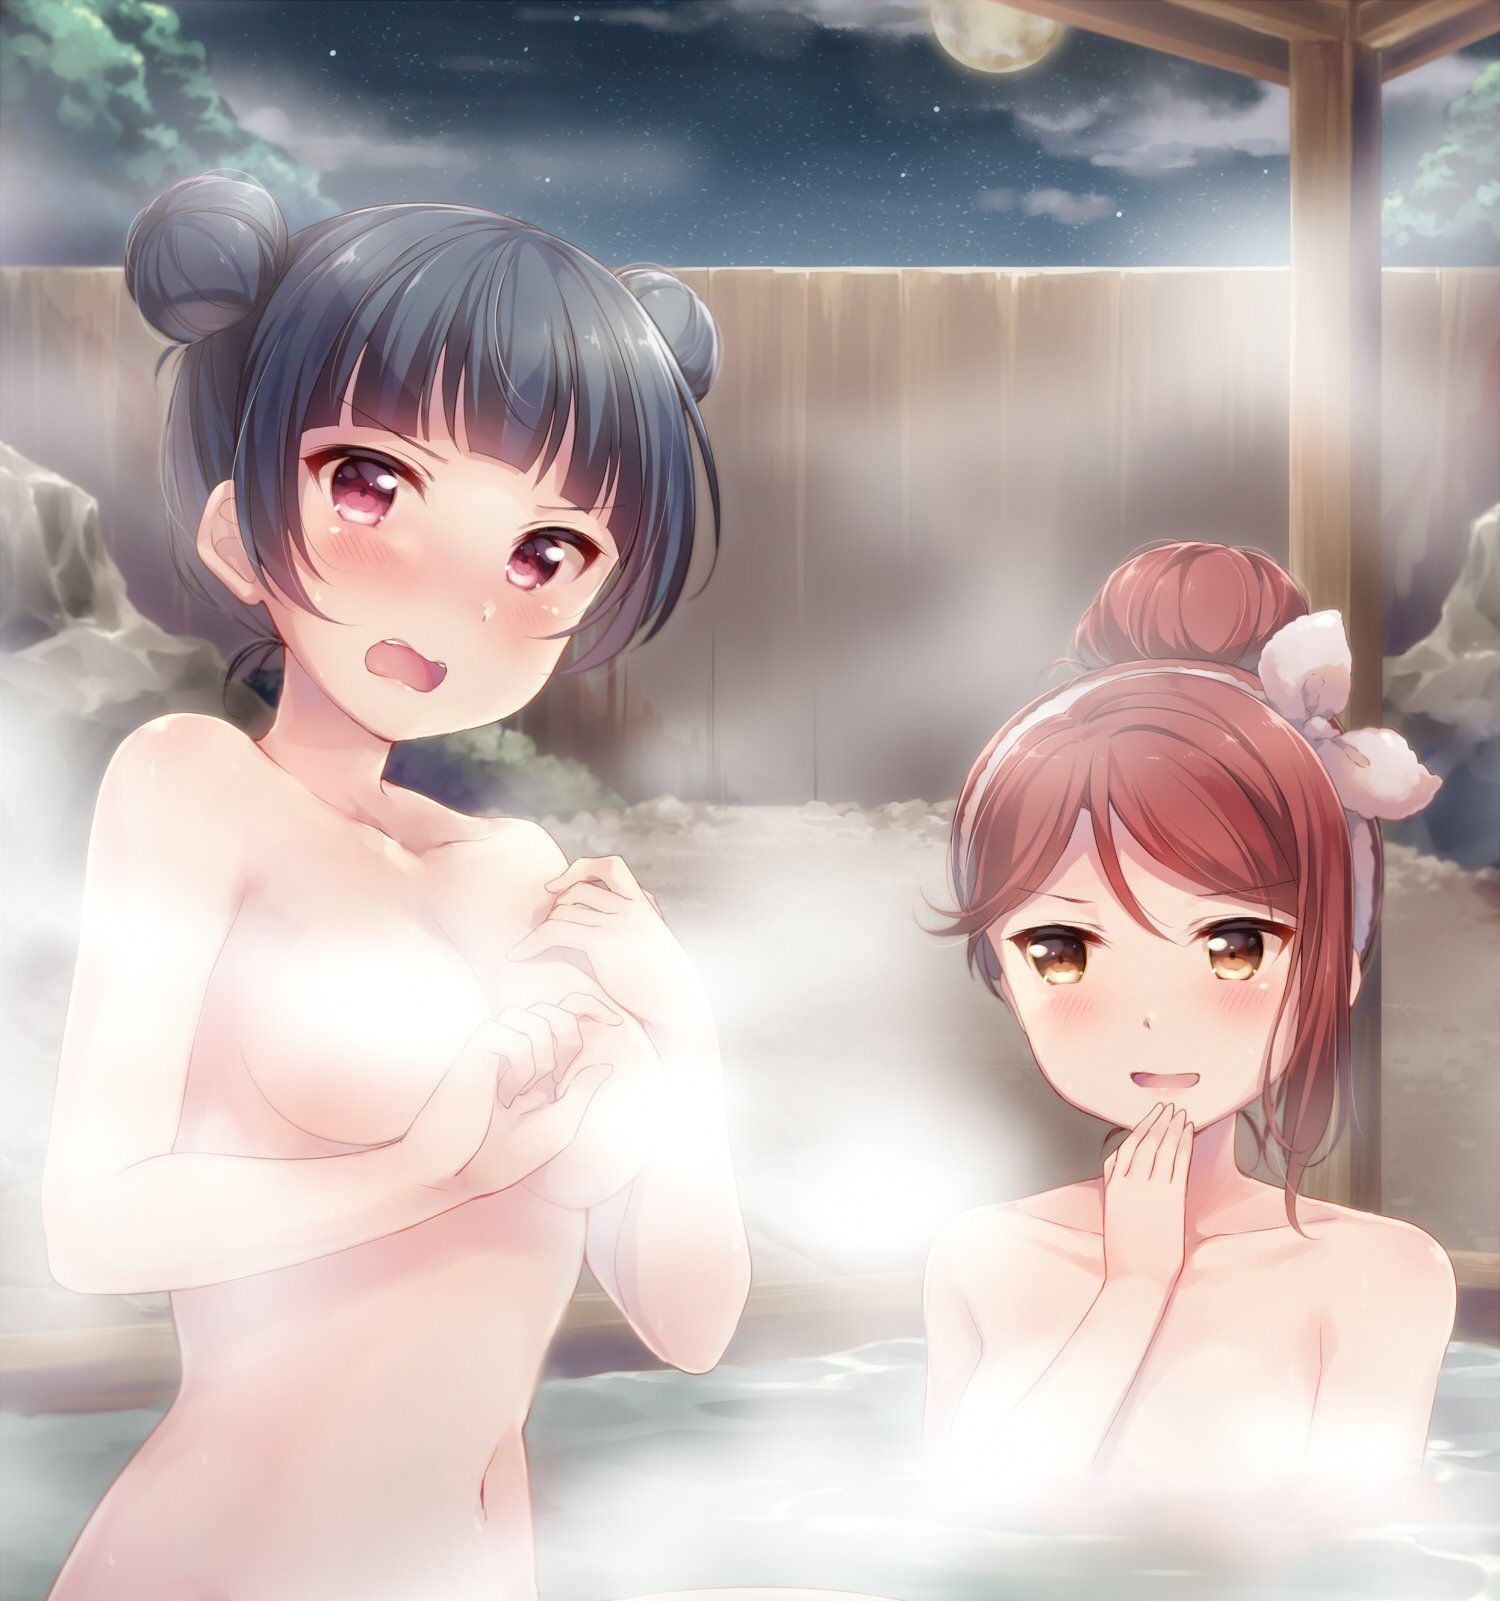 【Image】Bath and hot spring, H-too-passing Warotawwwwwwwwwwwwwww 13